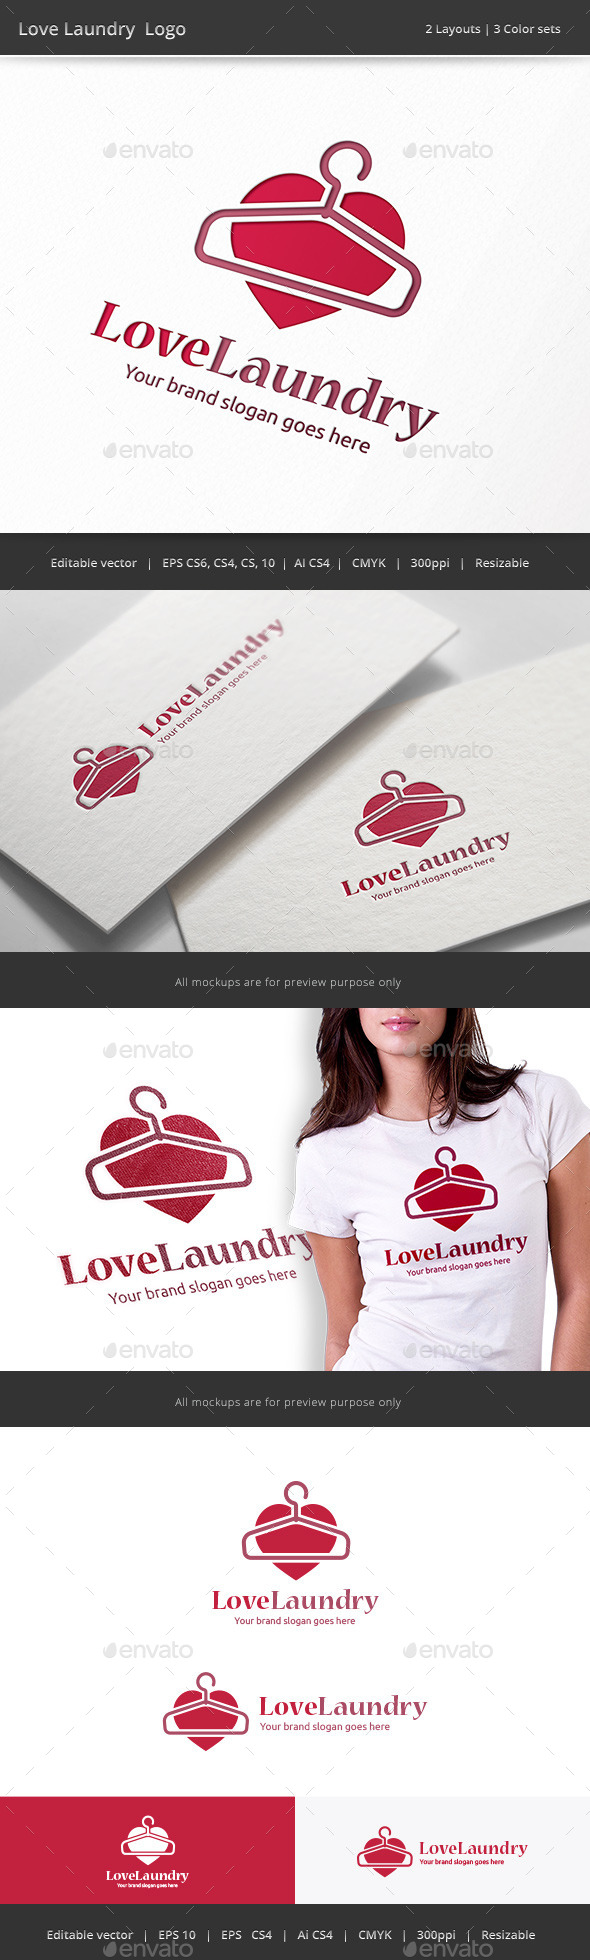 Love Laundry Logo (Vector)